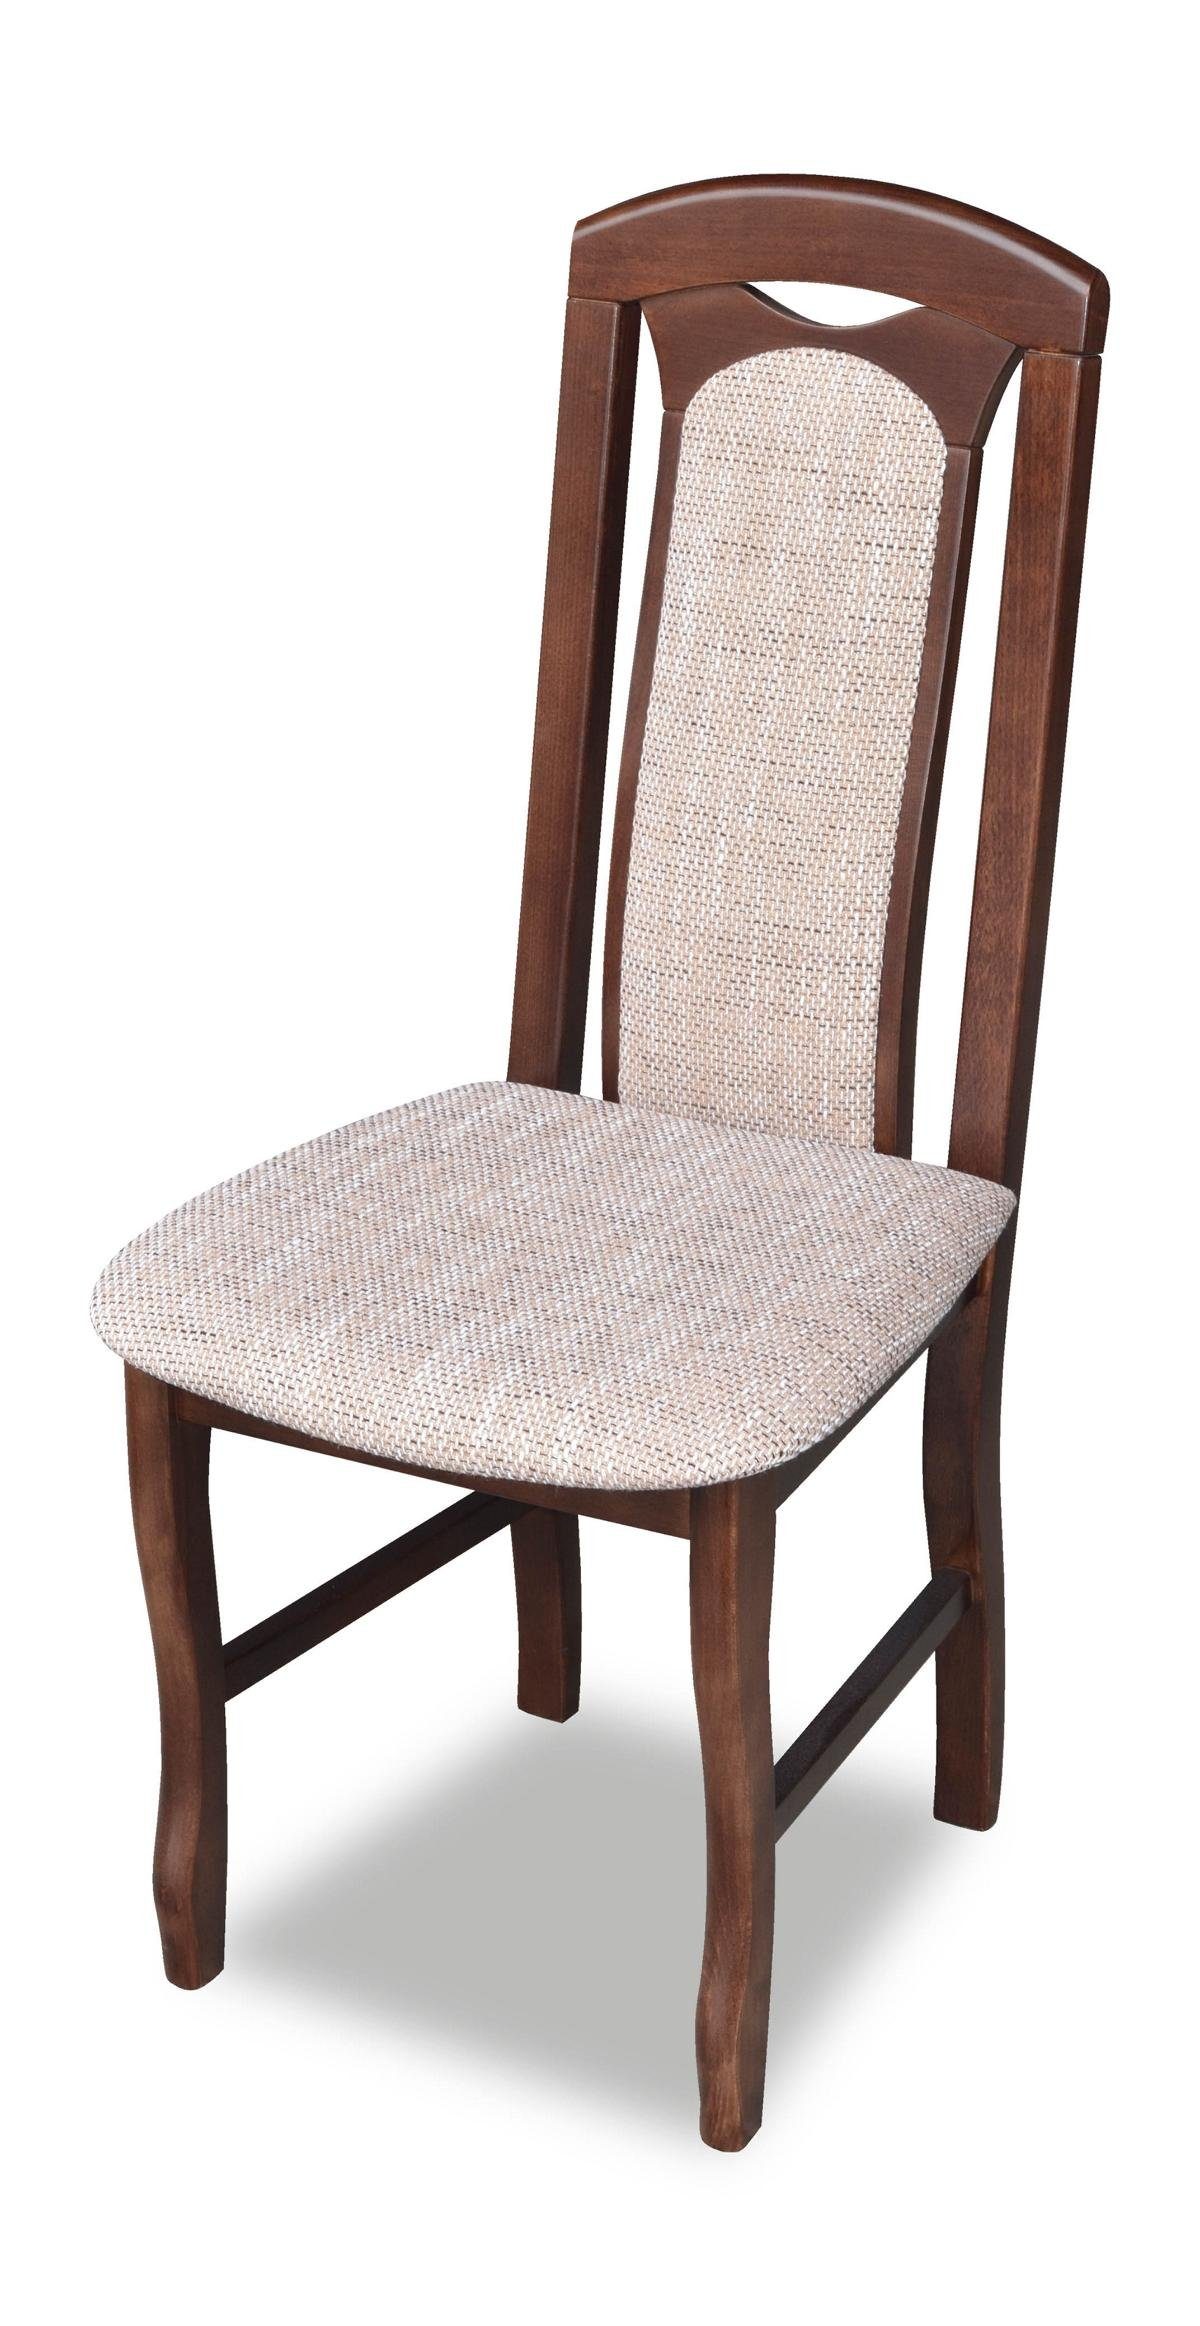 JVmoebel Stuhl, Klassischer Stuhl Landhaus Möbel Möbel Polster Polster Stühle Esszimmer Holz